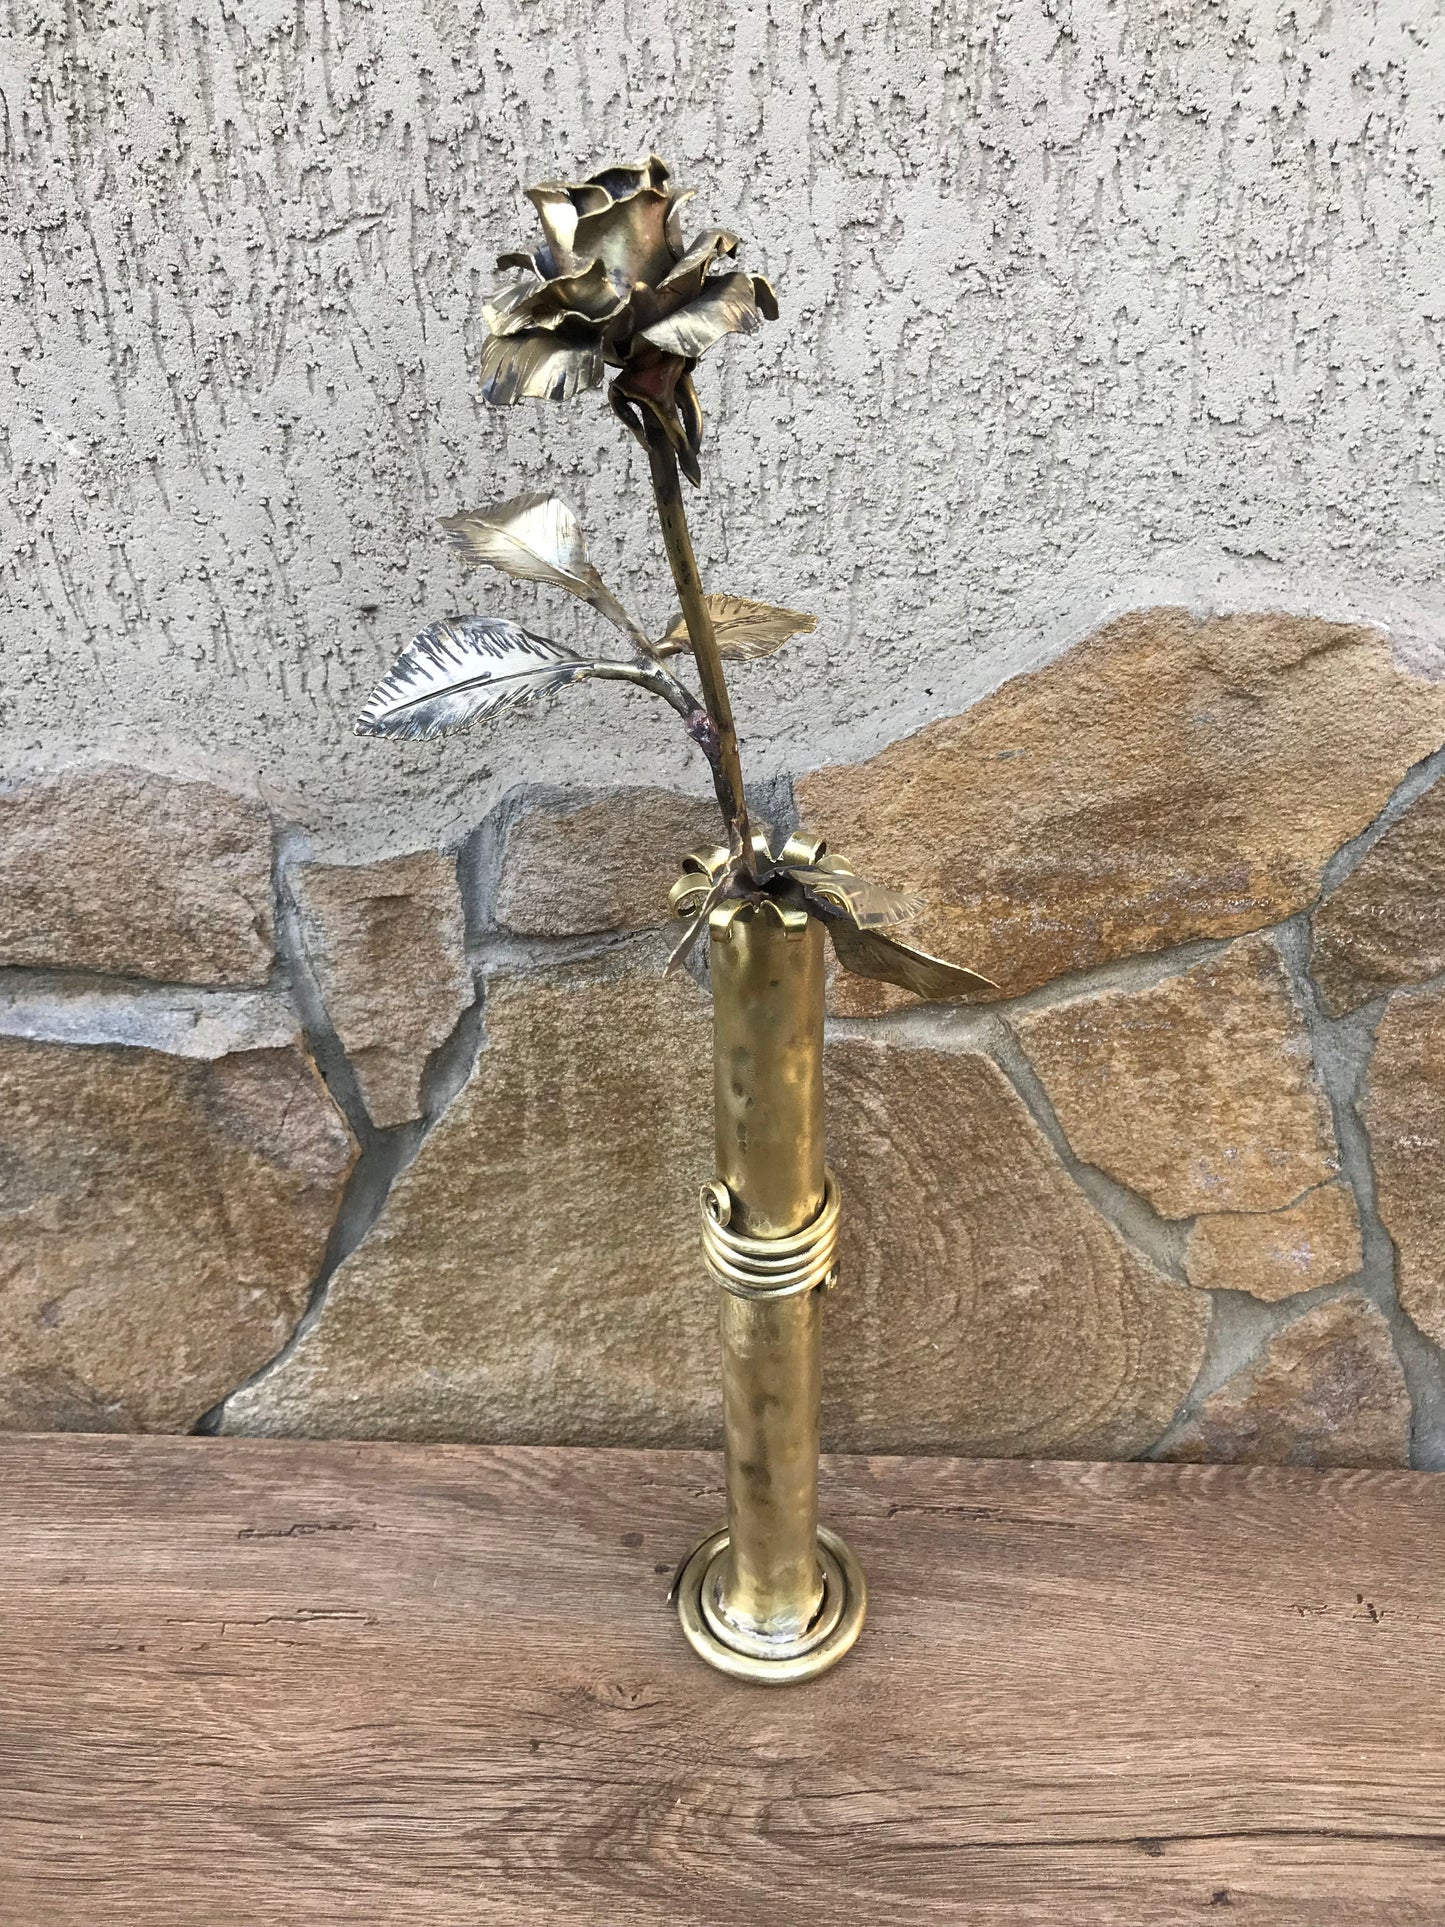 Bronze rose, bronze vase,bronze gift,bronze flower,bronze gift for wife,bronze gift for women,8th anniversary gift,bronze anniversary,bronze